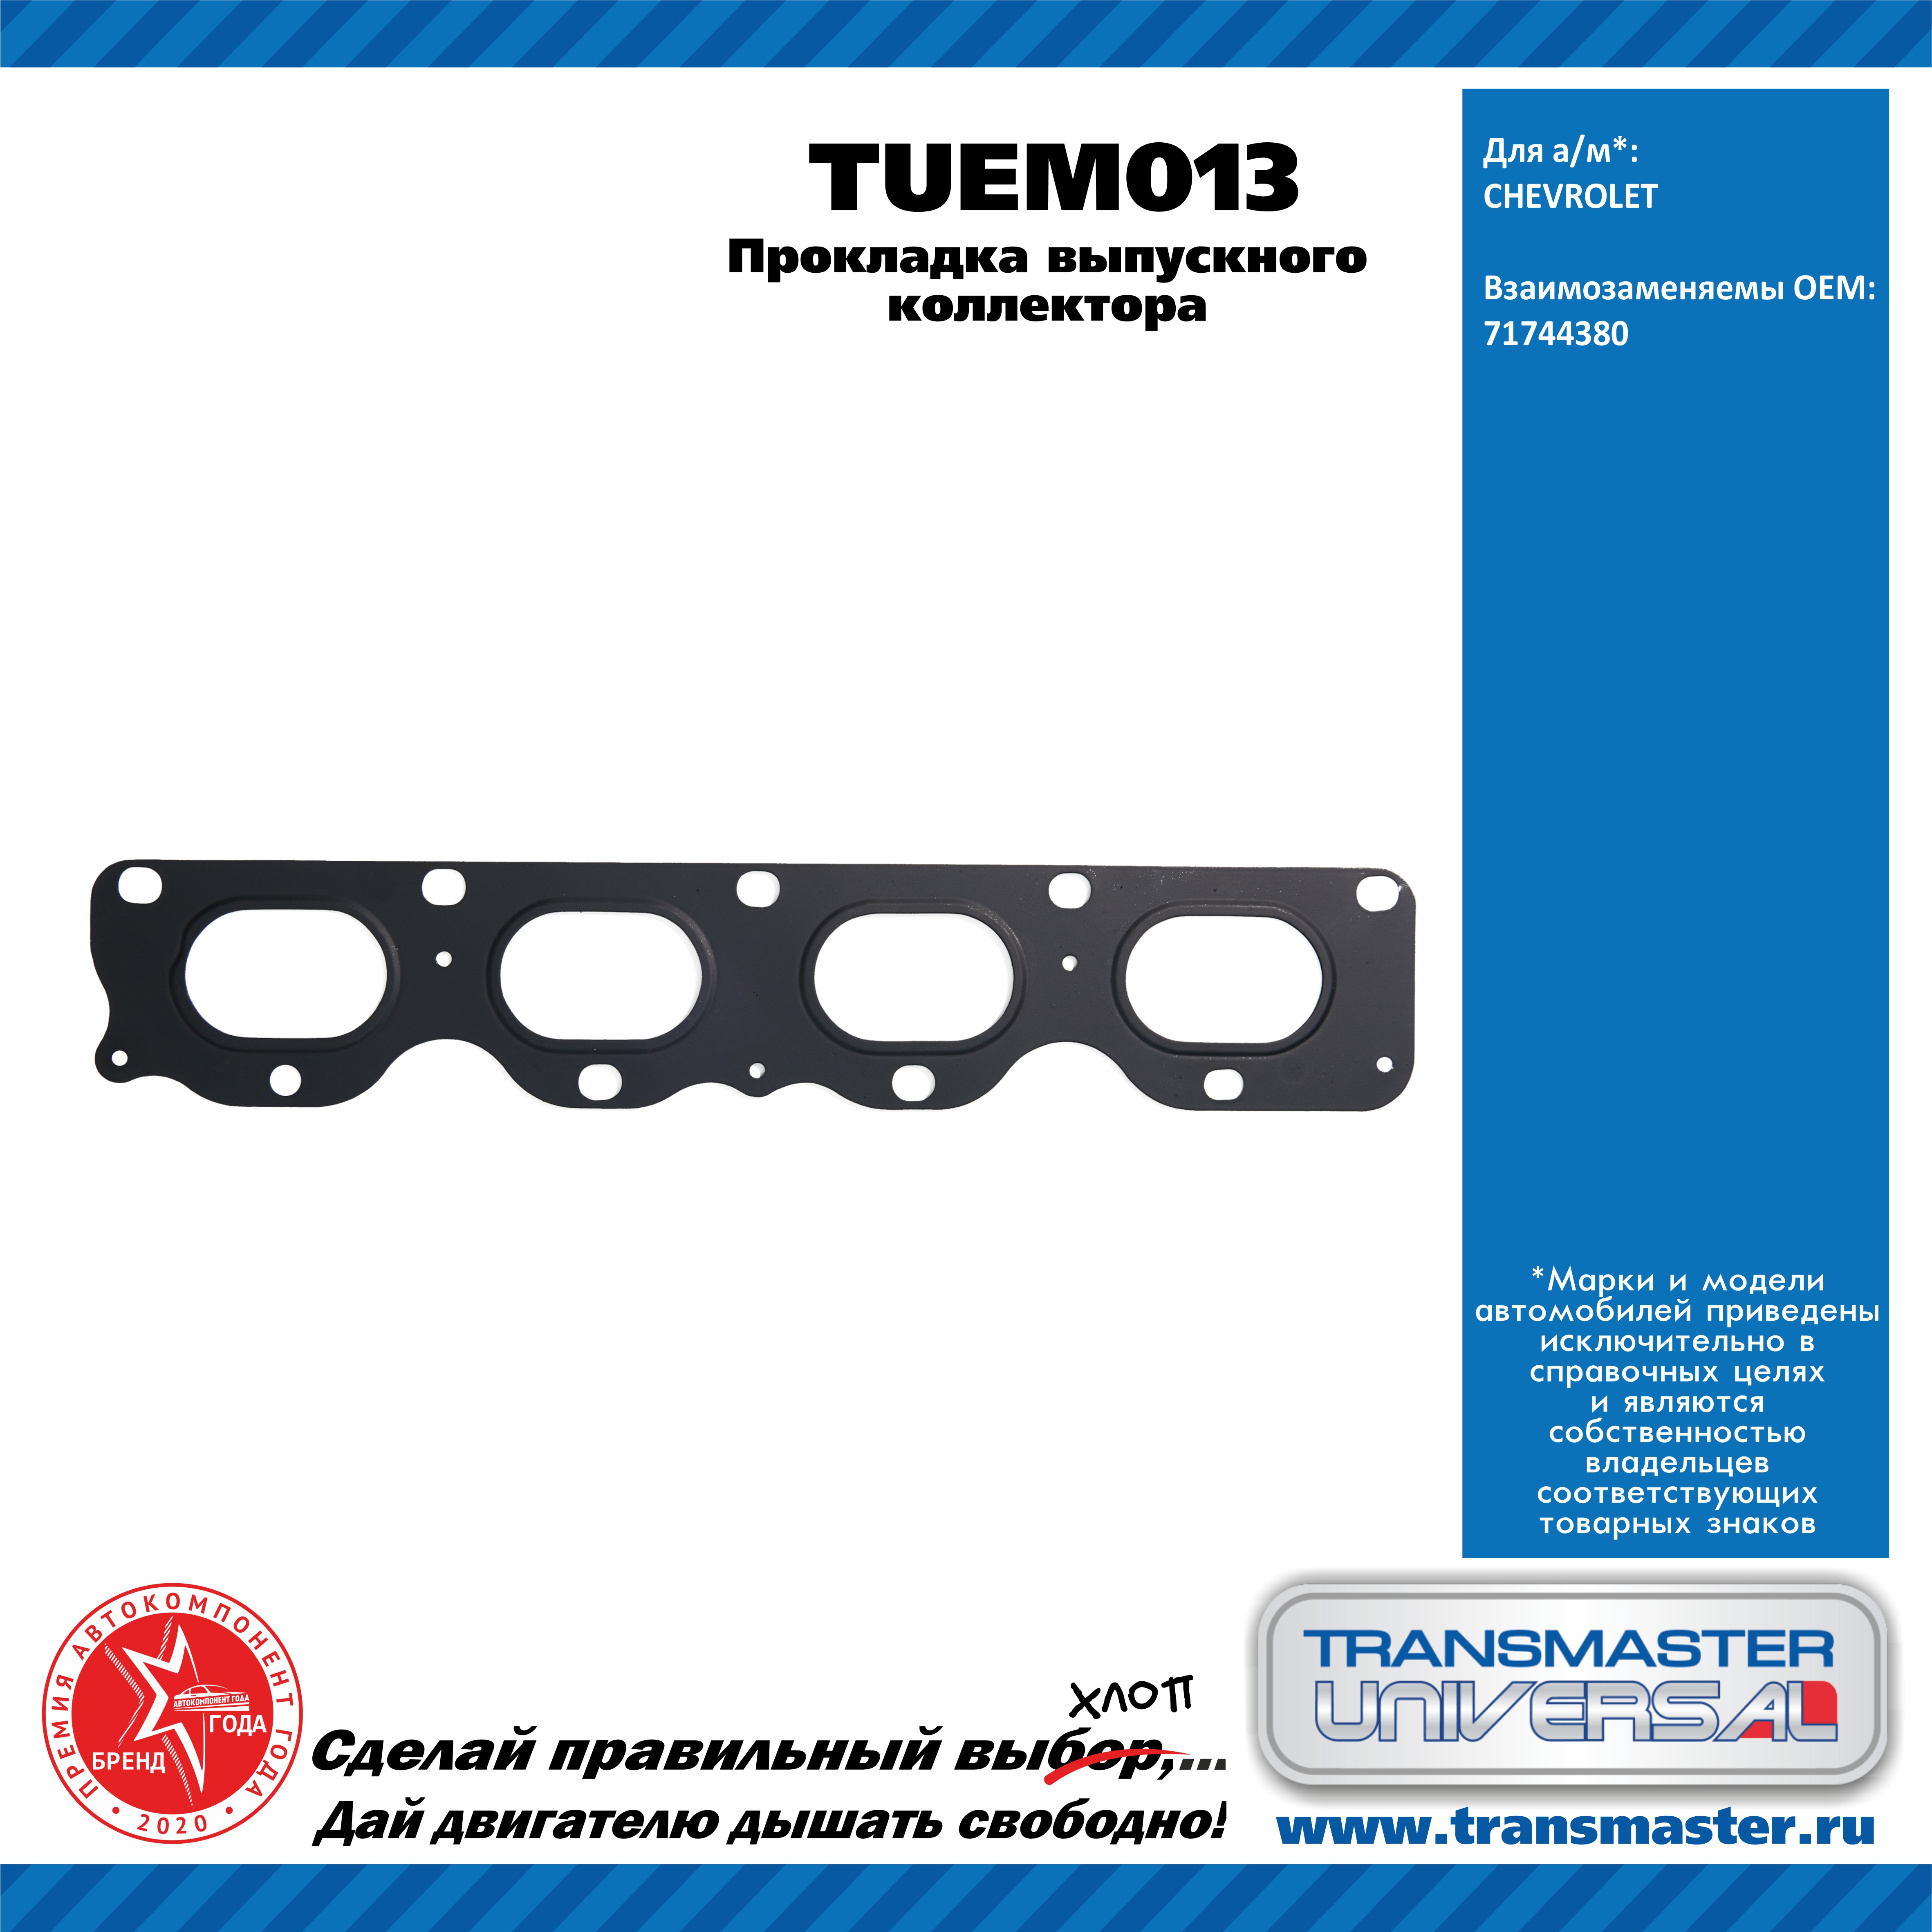 Прокладка выпускного коллектора chevrolet - TRANSMASTER UNIVERSAL TUEM013